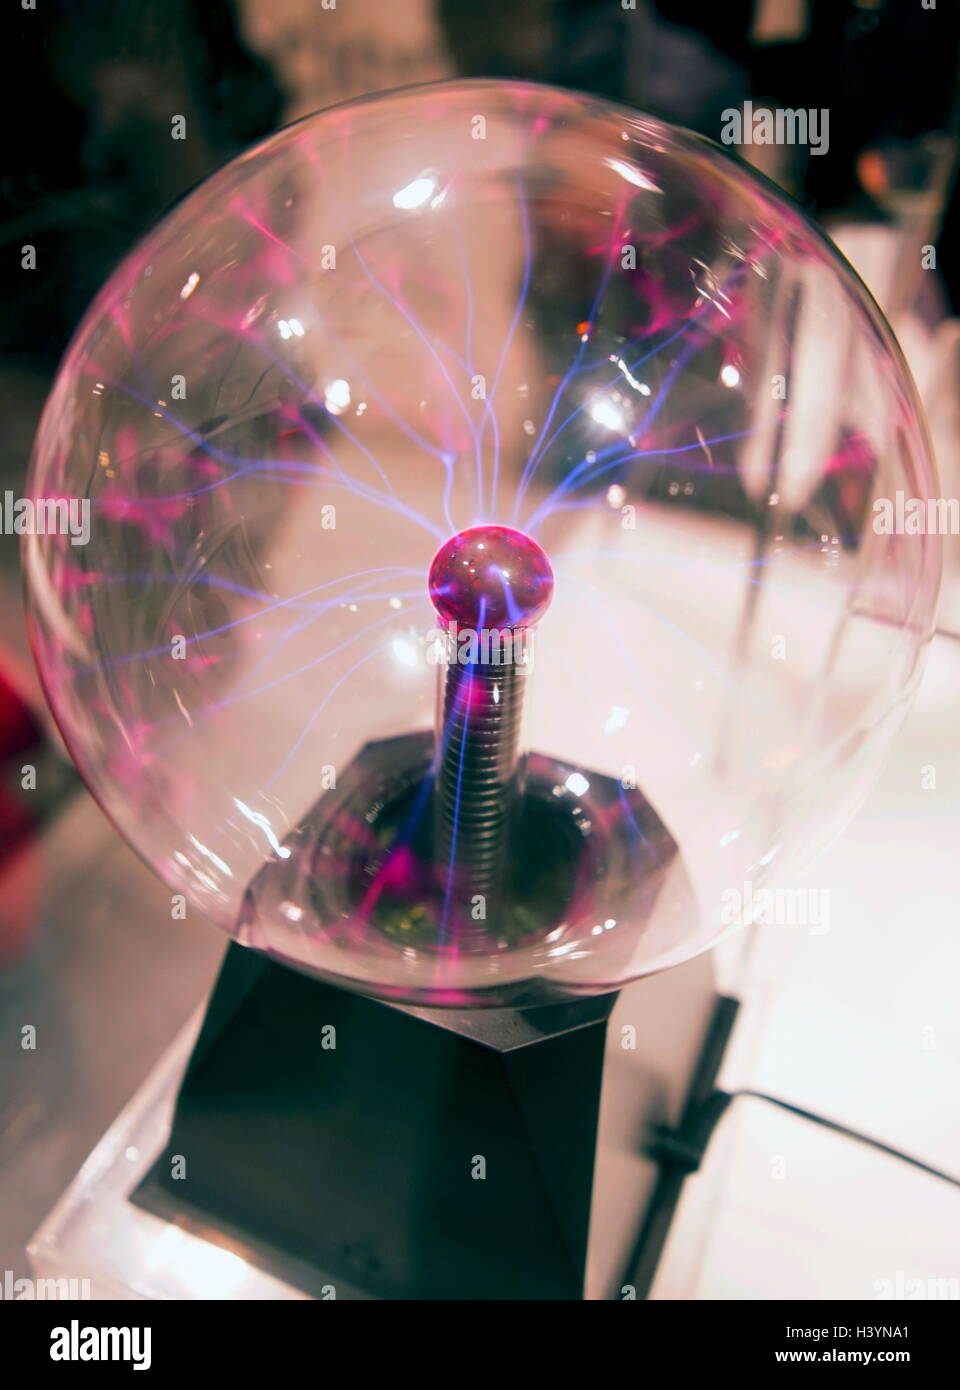 Física De Bola De Plasma De La Electricidad Imagen de archivo - Imagen de  iones, mande: 267208439